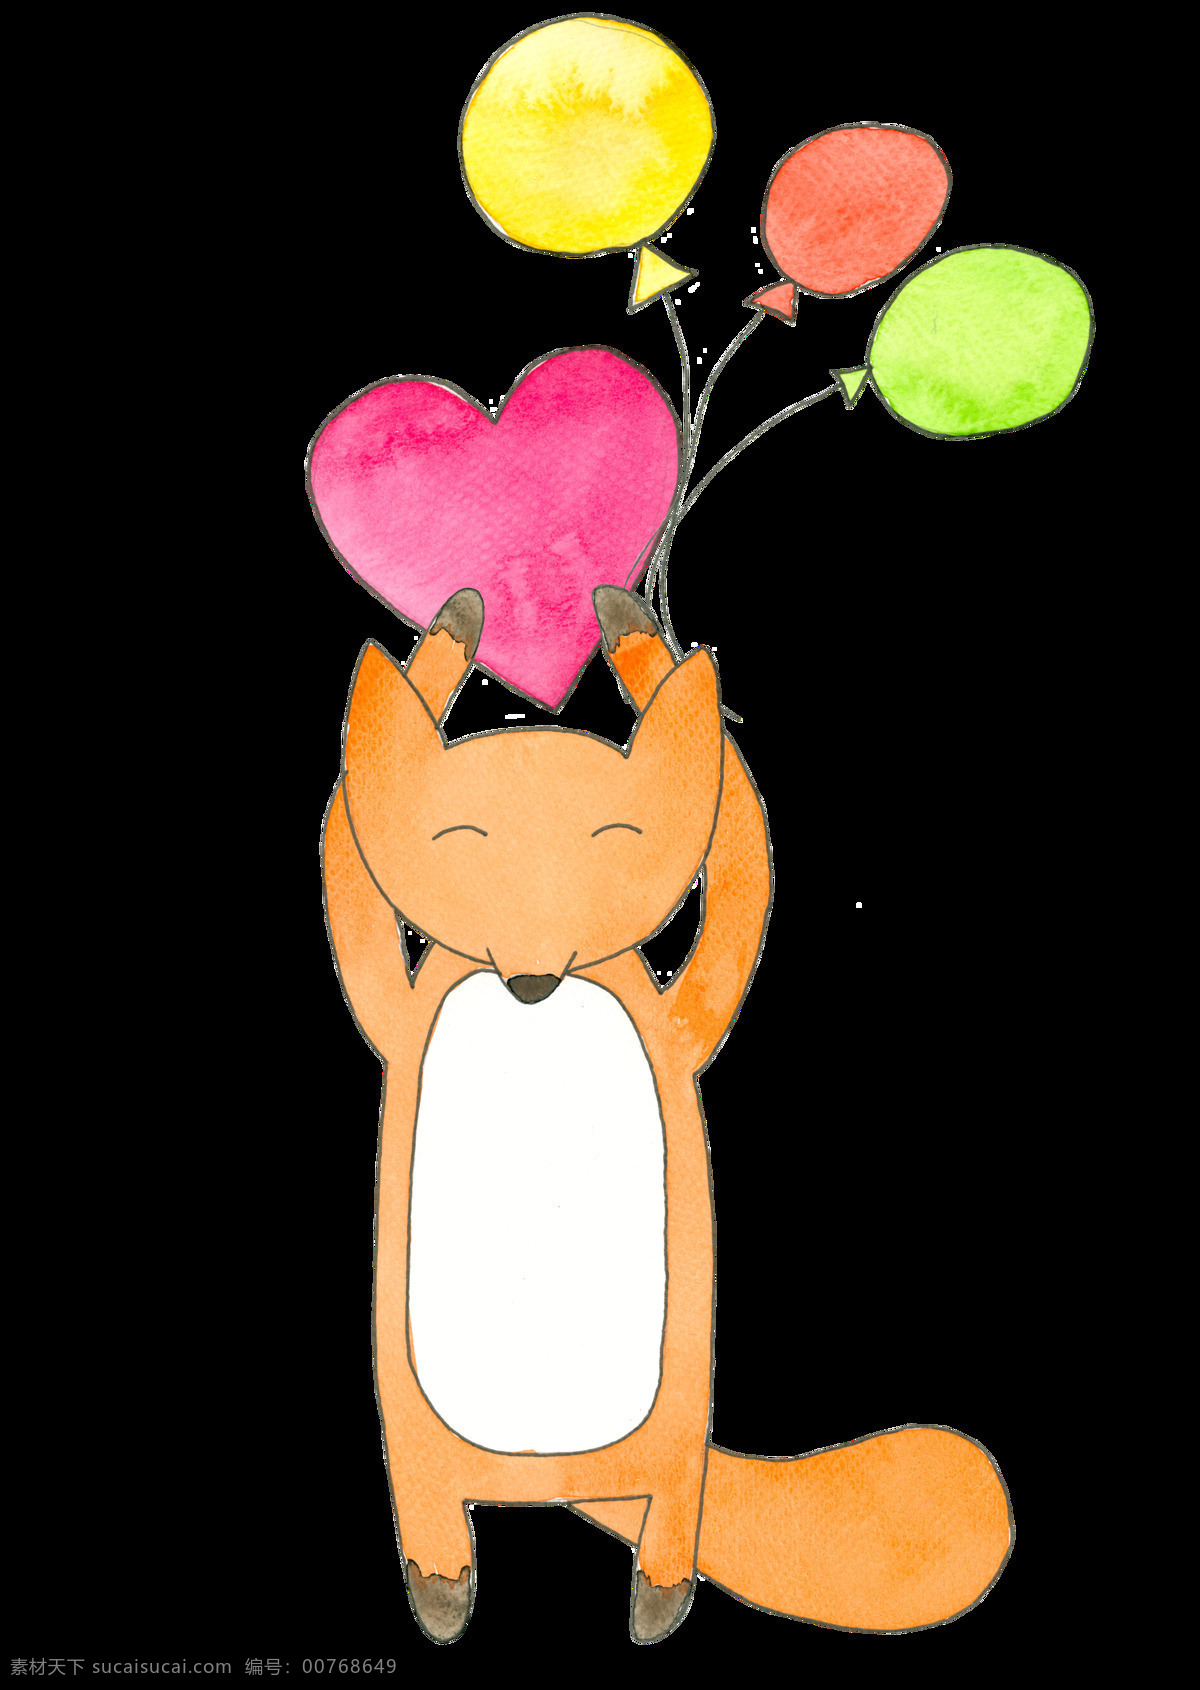 卡通 狐狸 透明 橙色 手绘 爱心 气球 矢量素材 设计素材